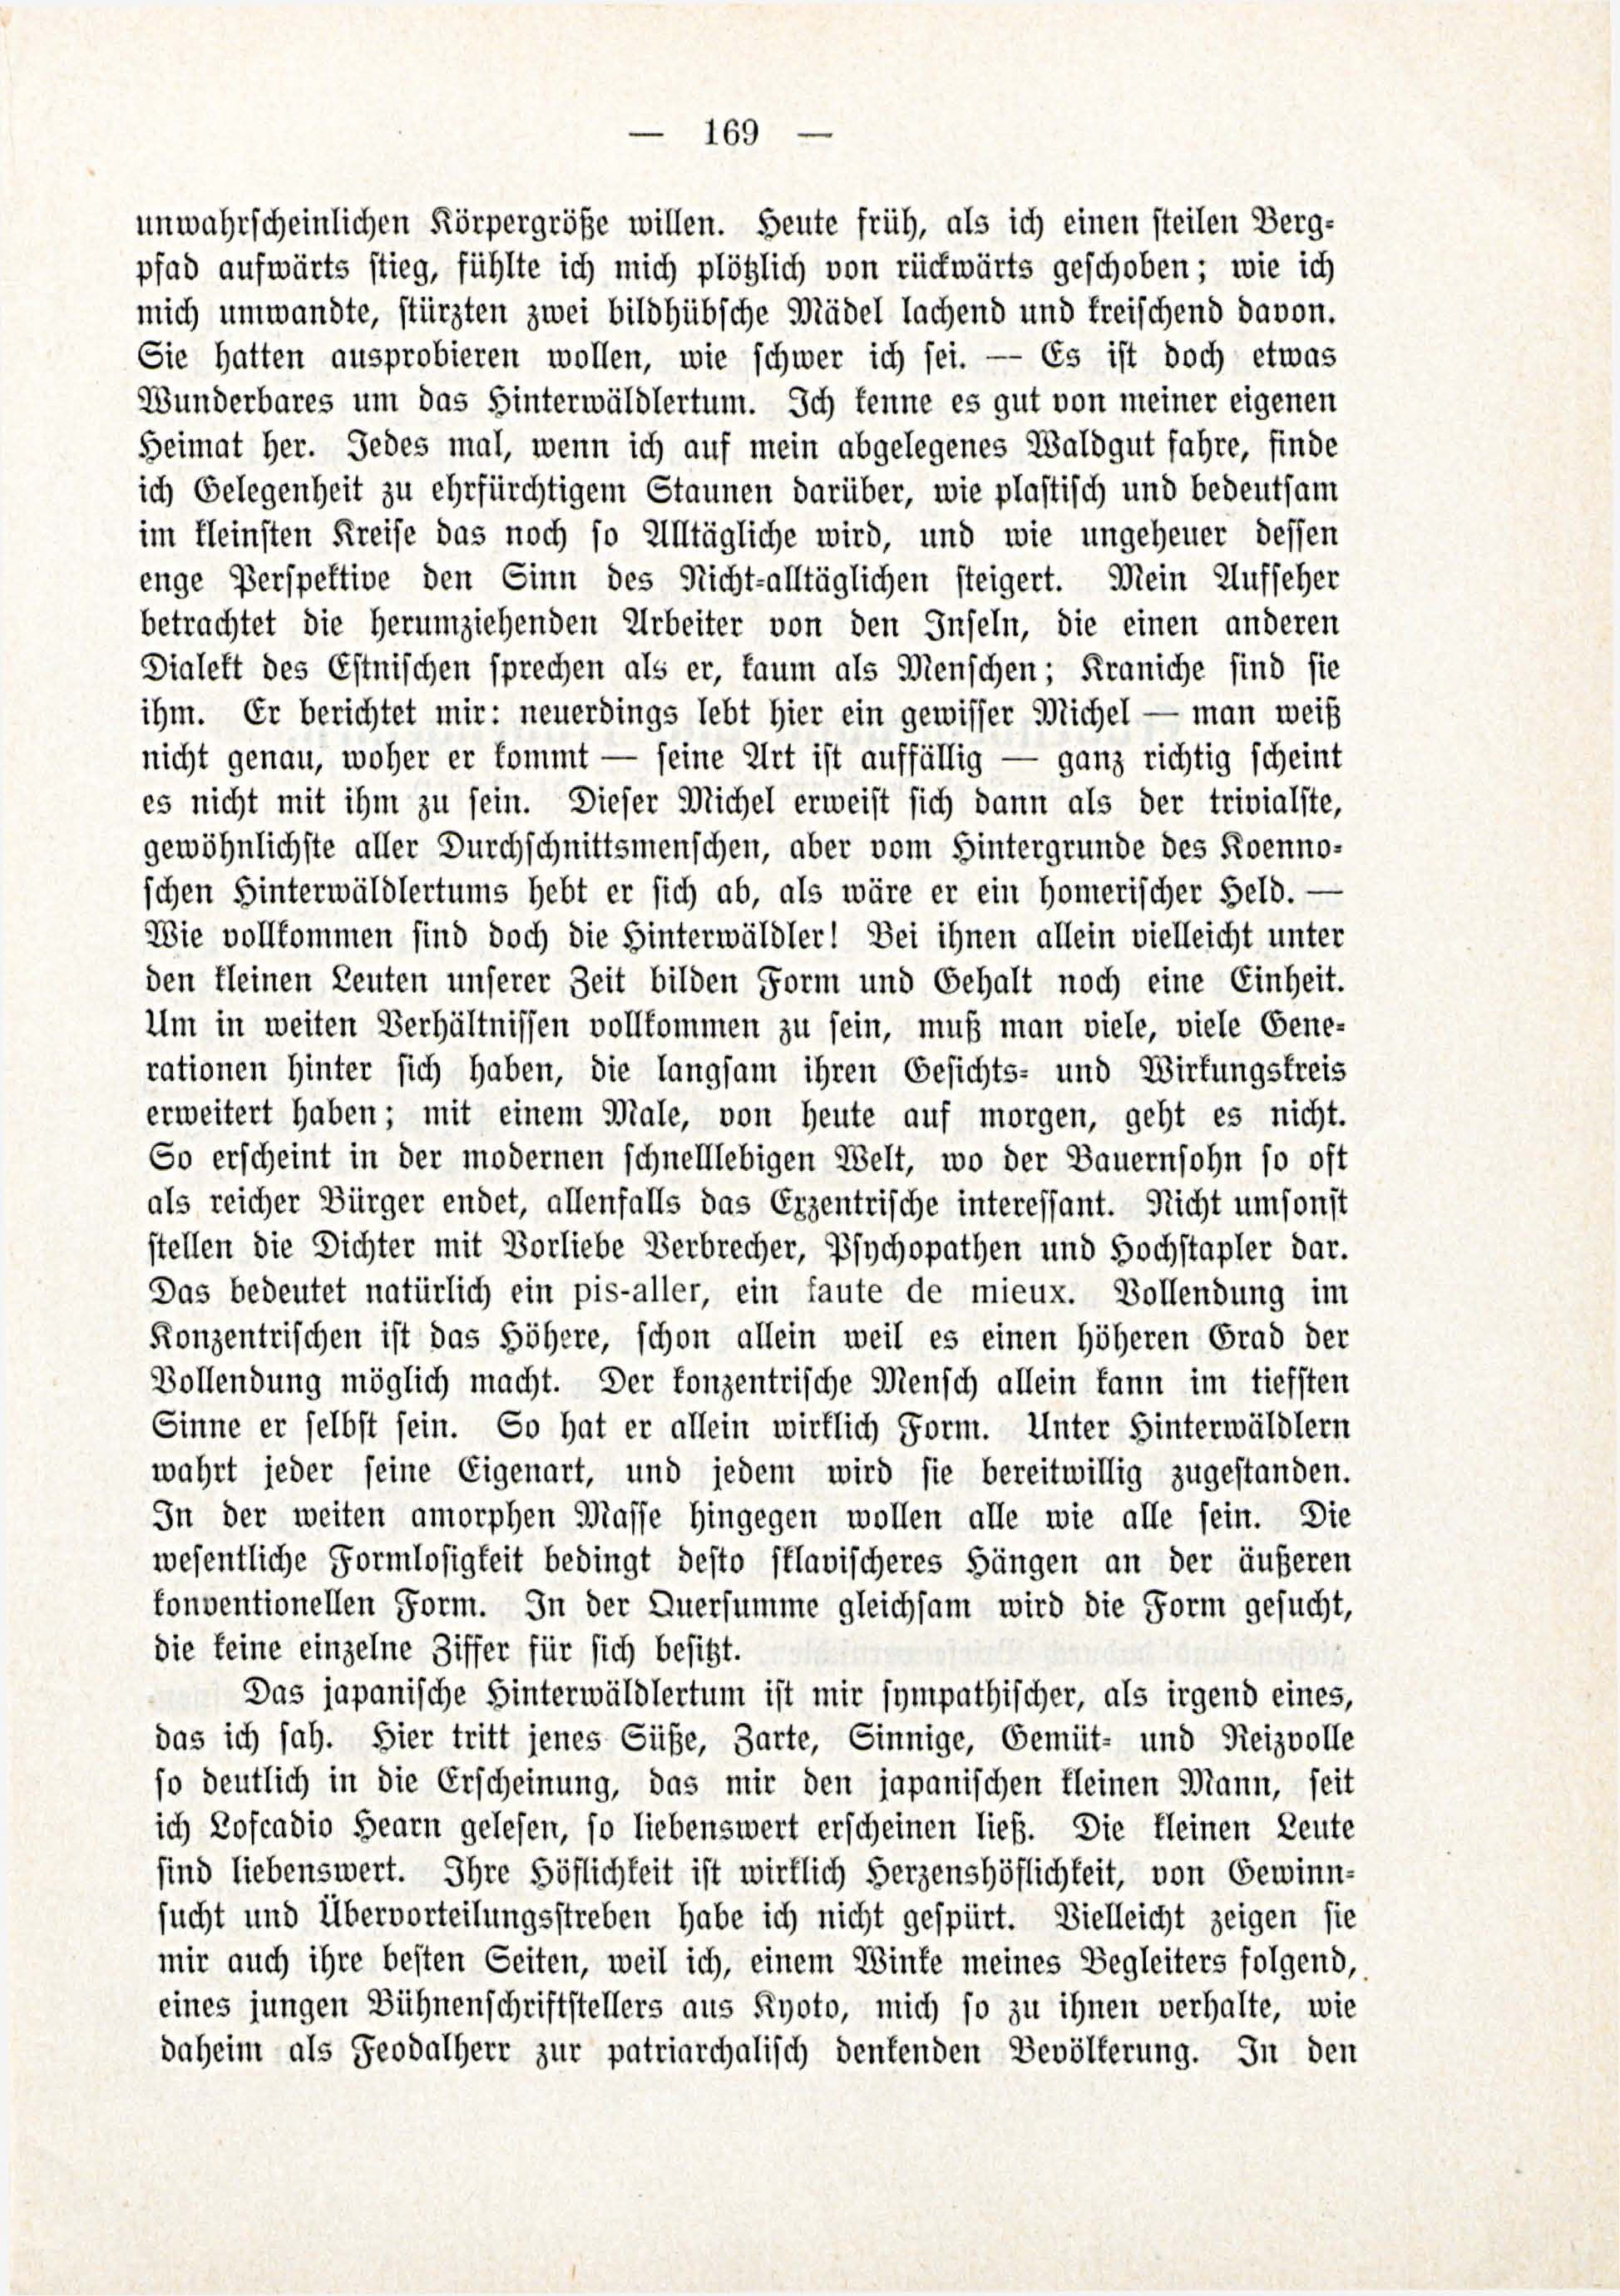 Deutsche Monatsschrift für Russland [3/03] (1914) | 15. (169) Põhitekst